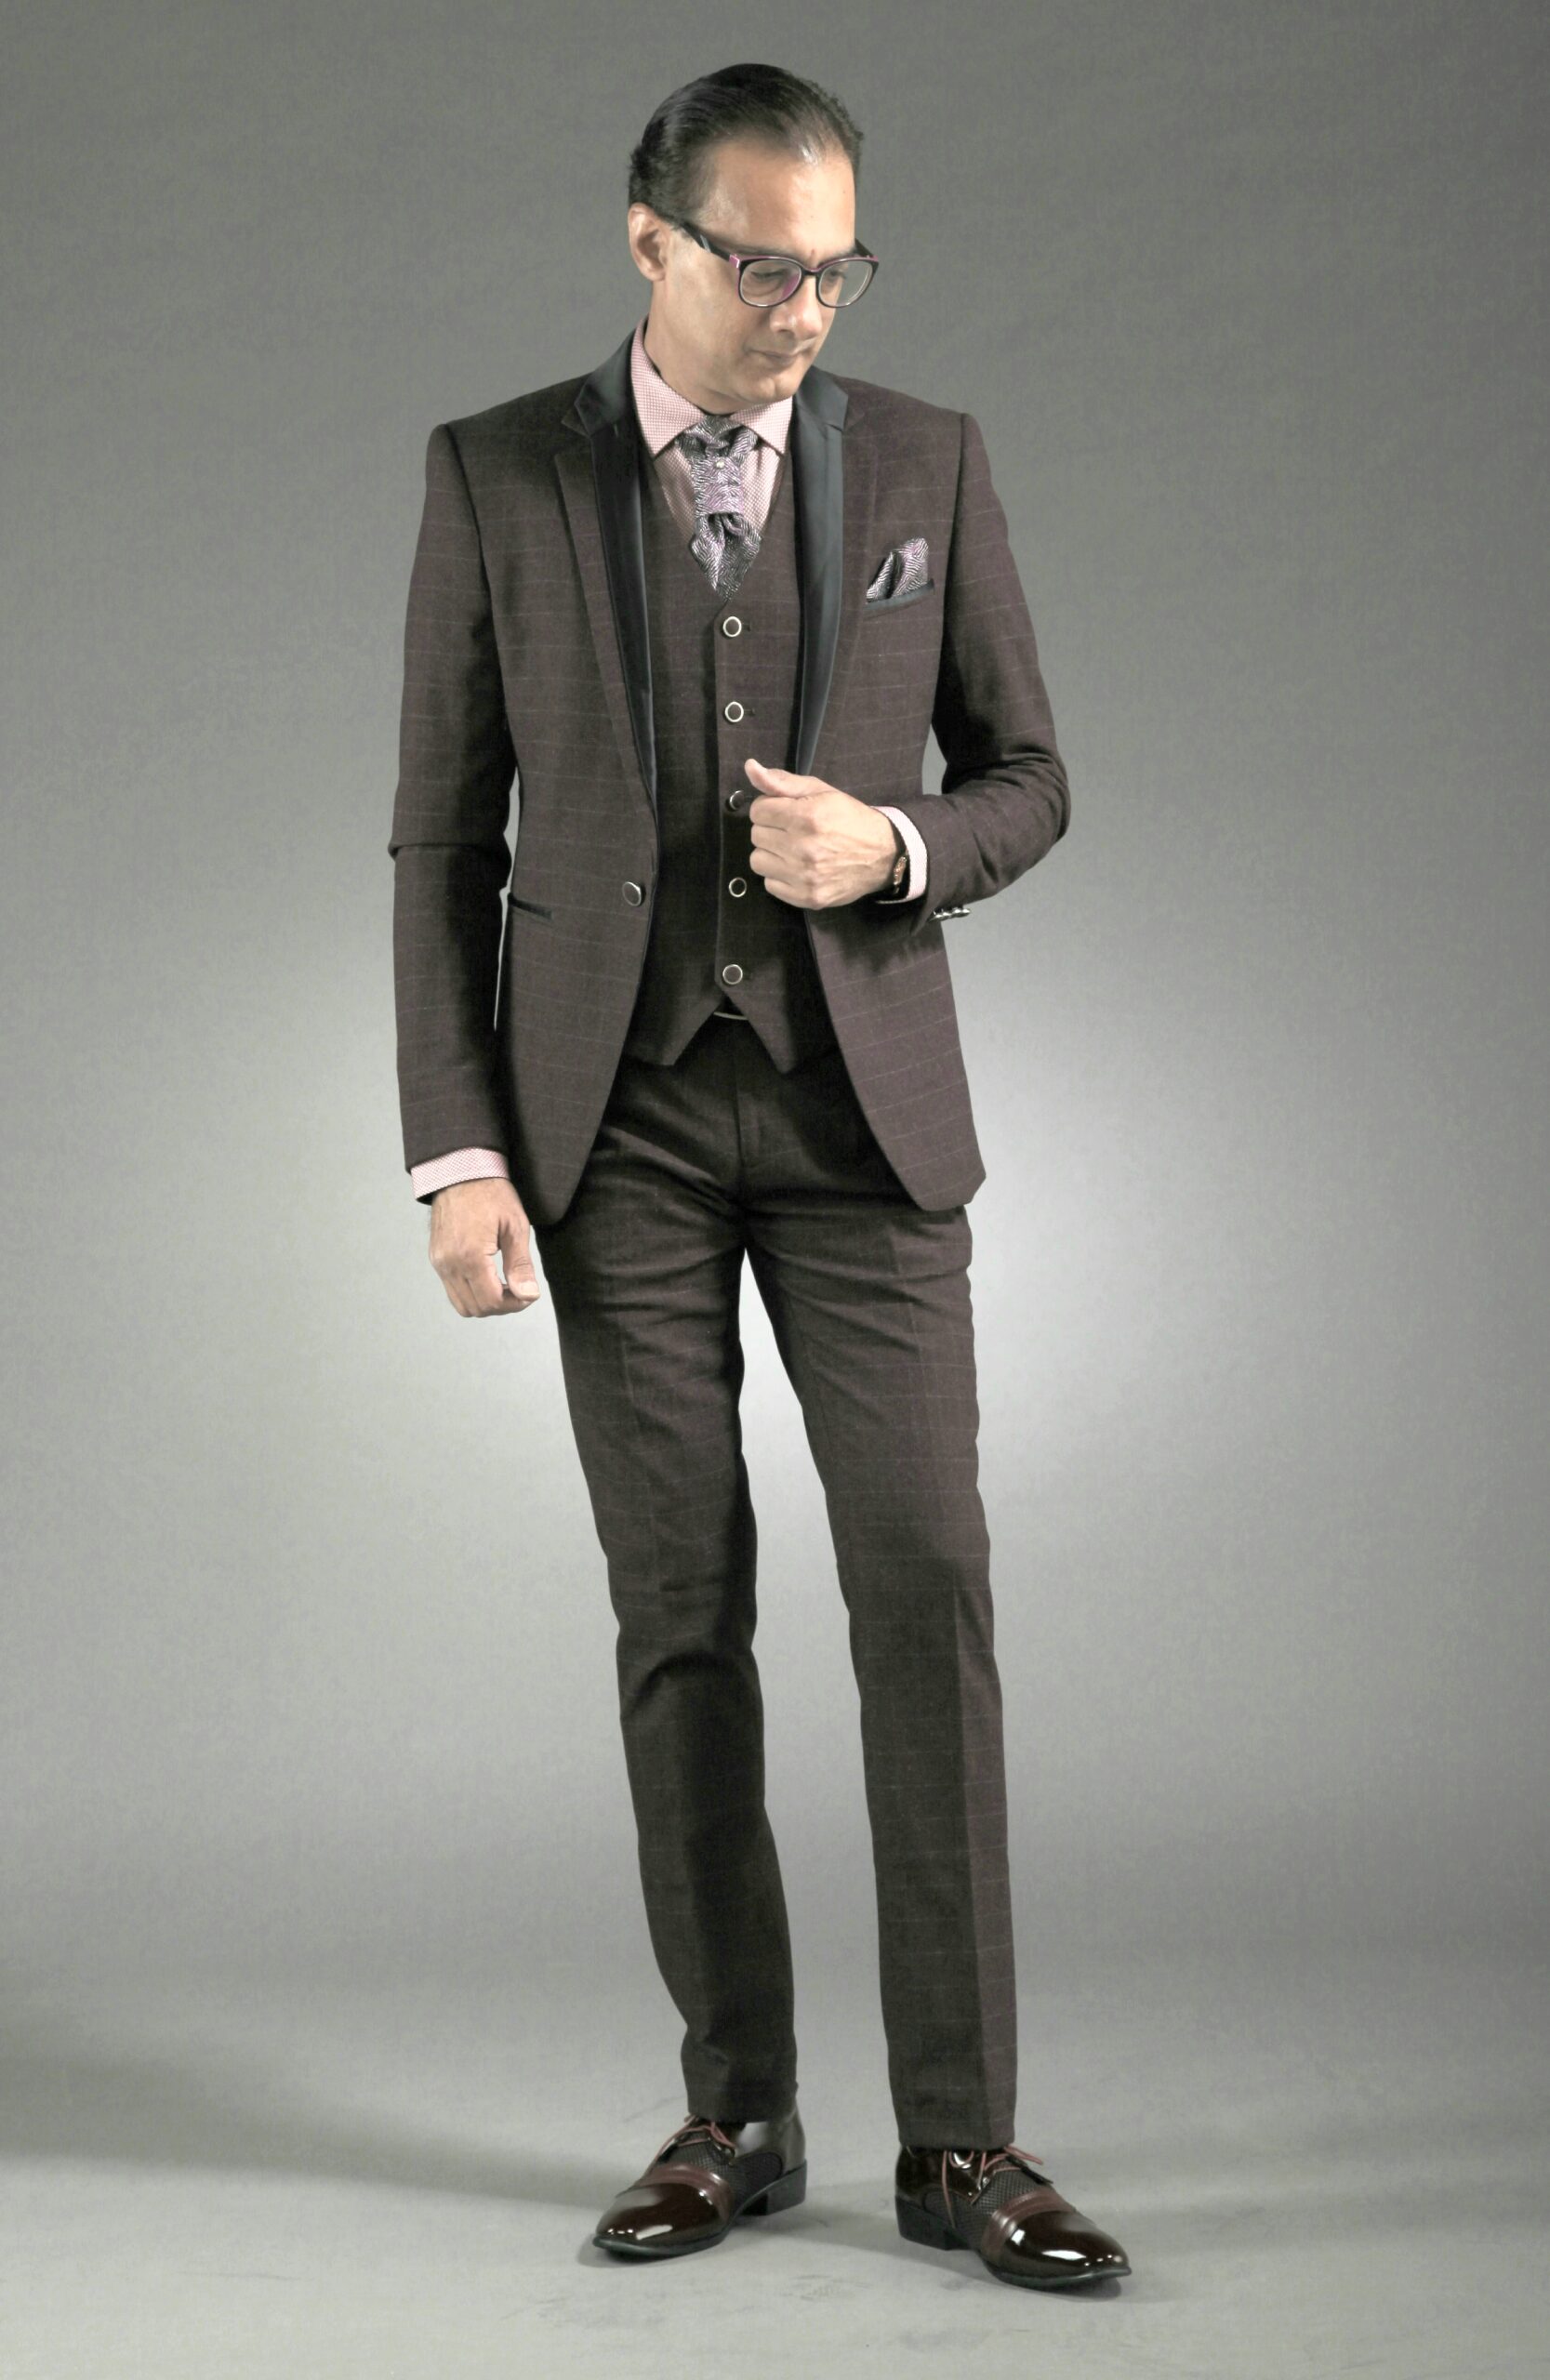 MST-5069-02-rent_rental_hire_tuxedo_suit_black_tie_suit_designer_suits_shop_tailor_tailors_singapore_wedding